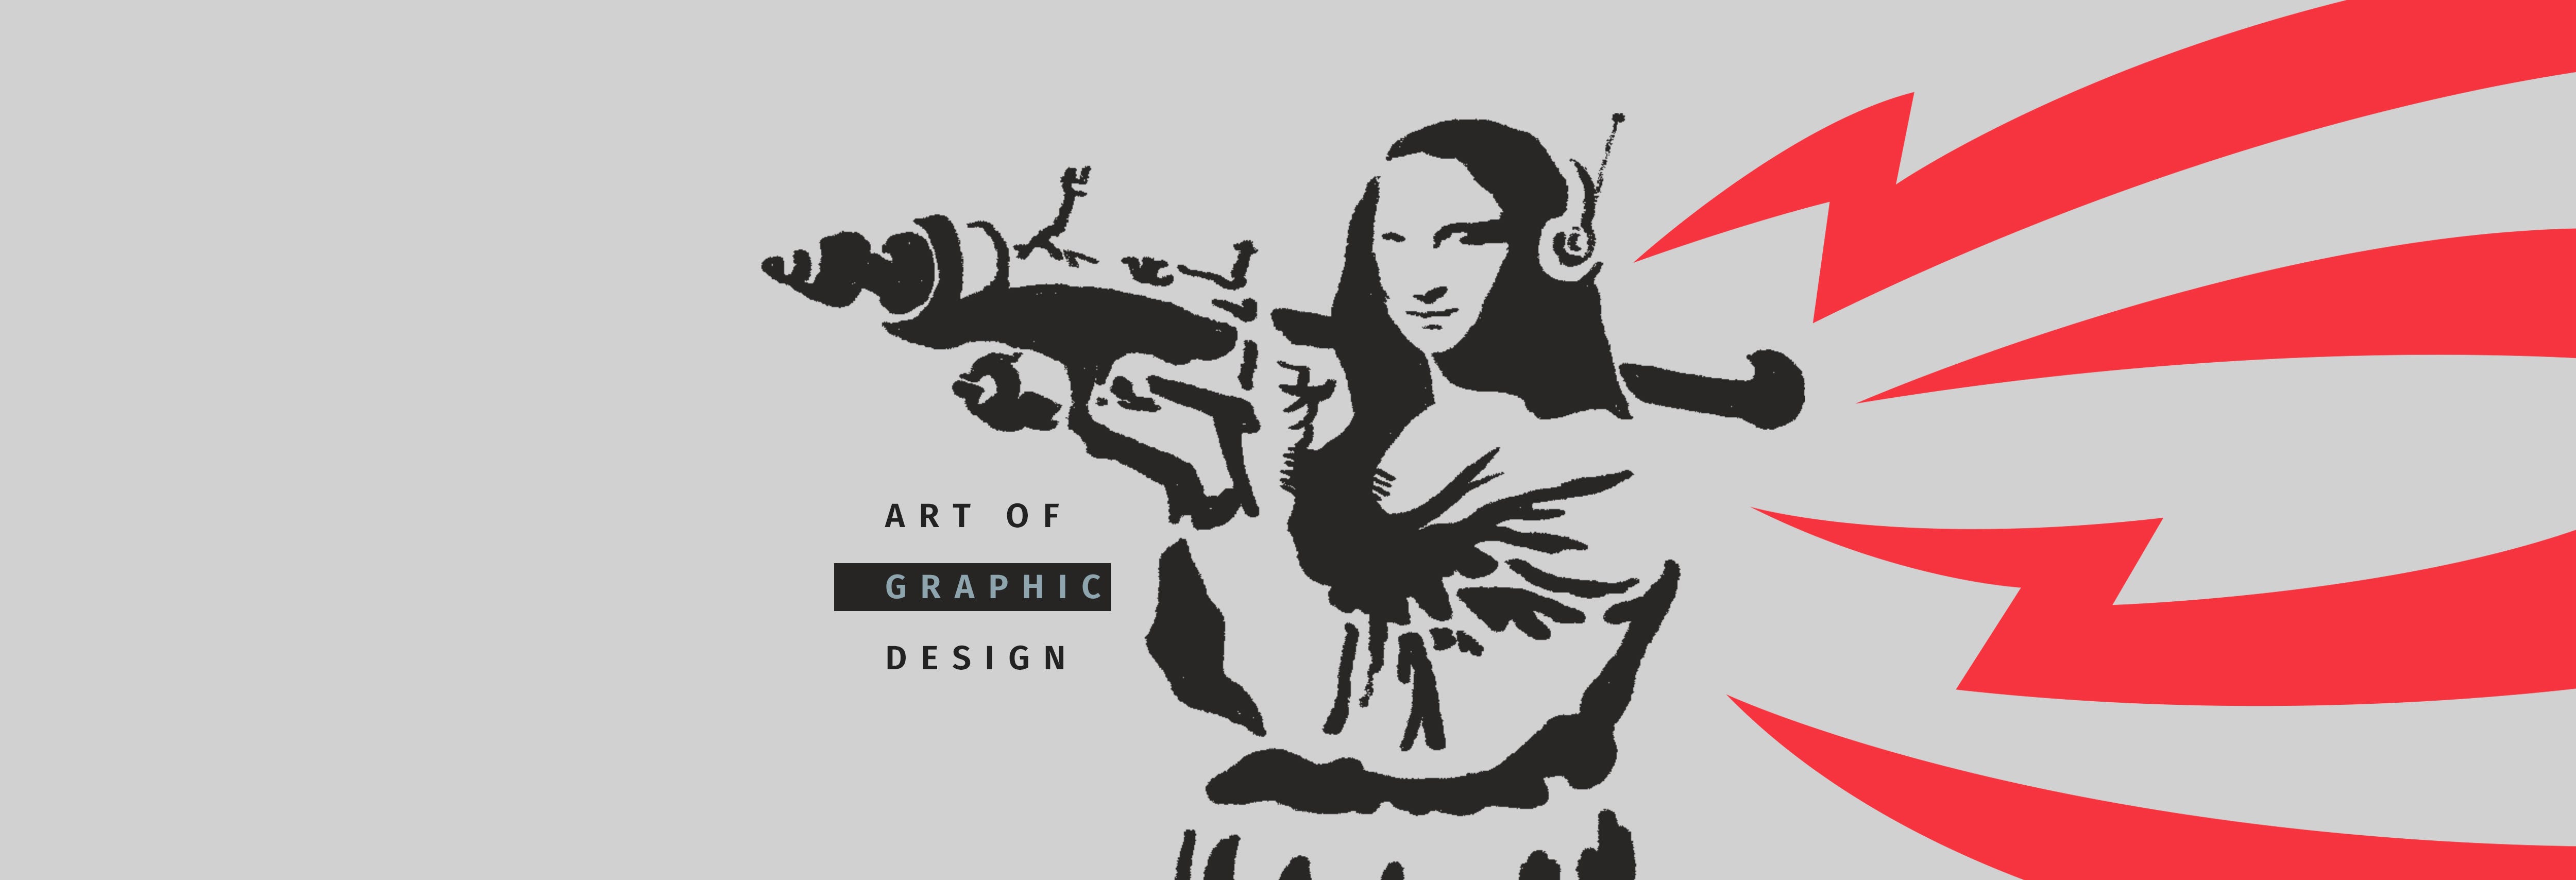 The Art Of Graphic Design Graphic Language Medium